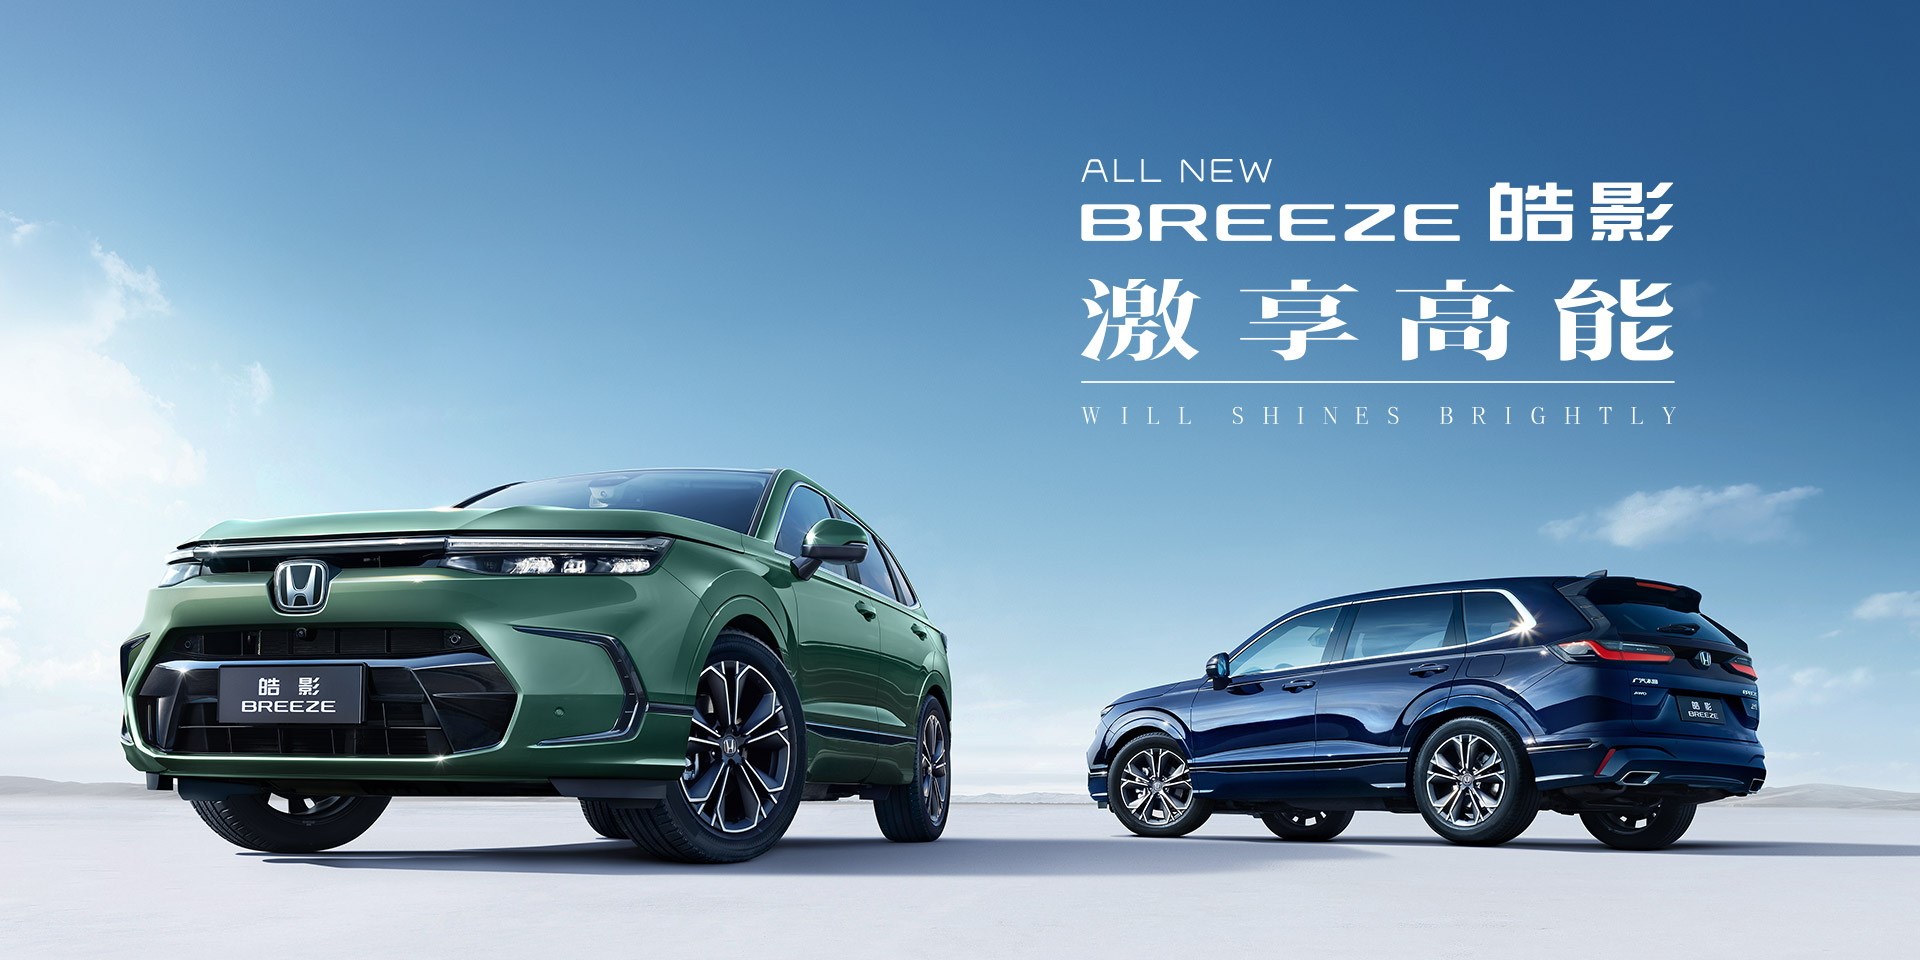 Yeni Honda Breeze Çin'de tanıtıldı: İşte tasarımı ve özellikleri